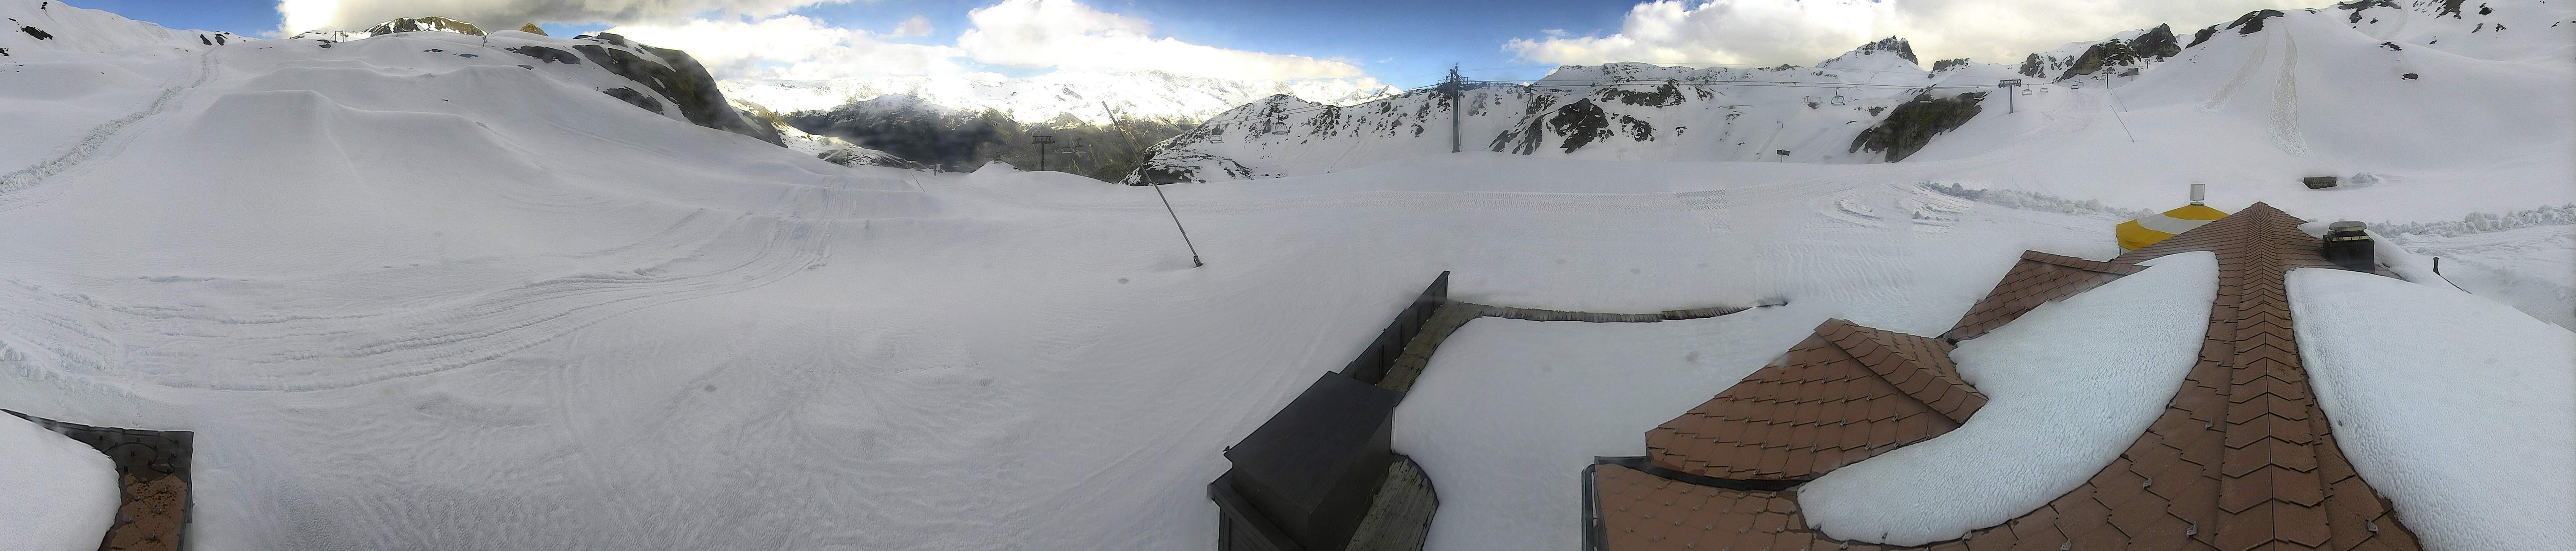 Grimentz - Bendolla, domaine skiable - Skigebiet - Ski slopes